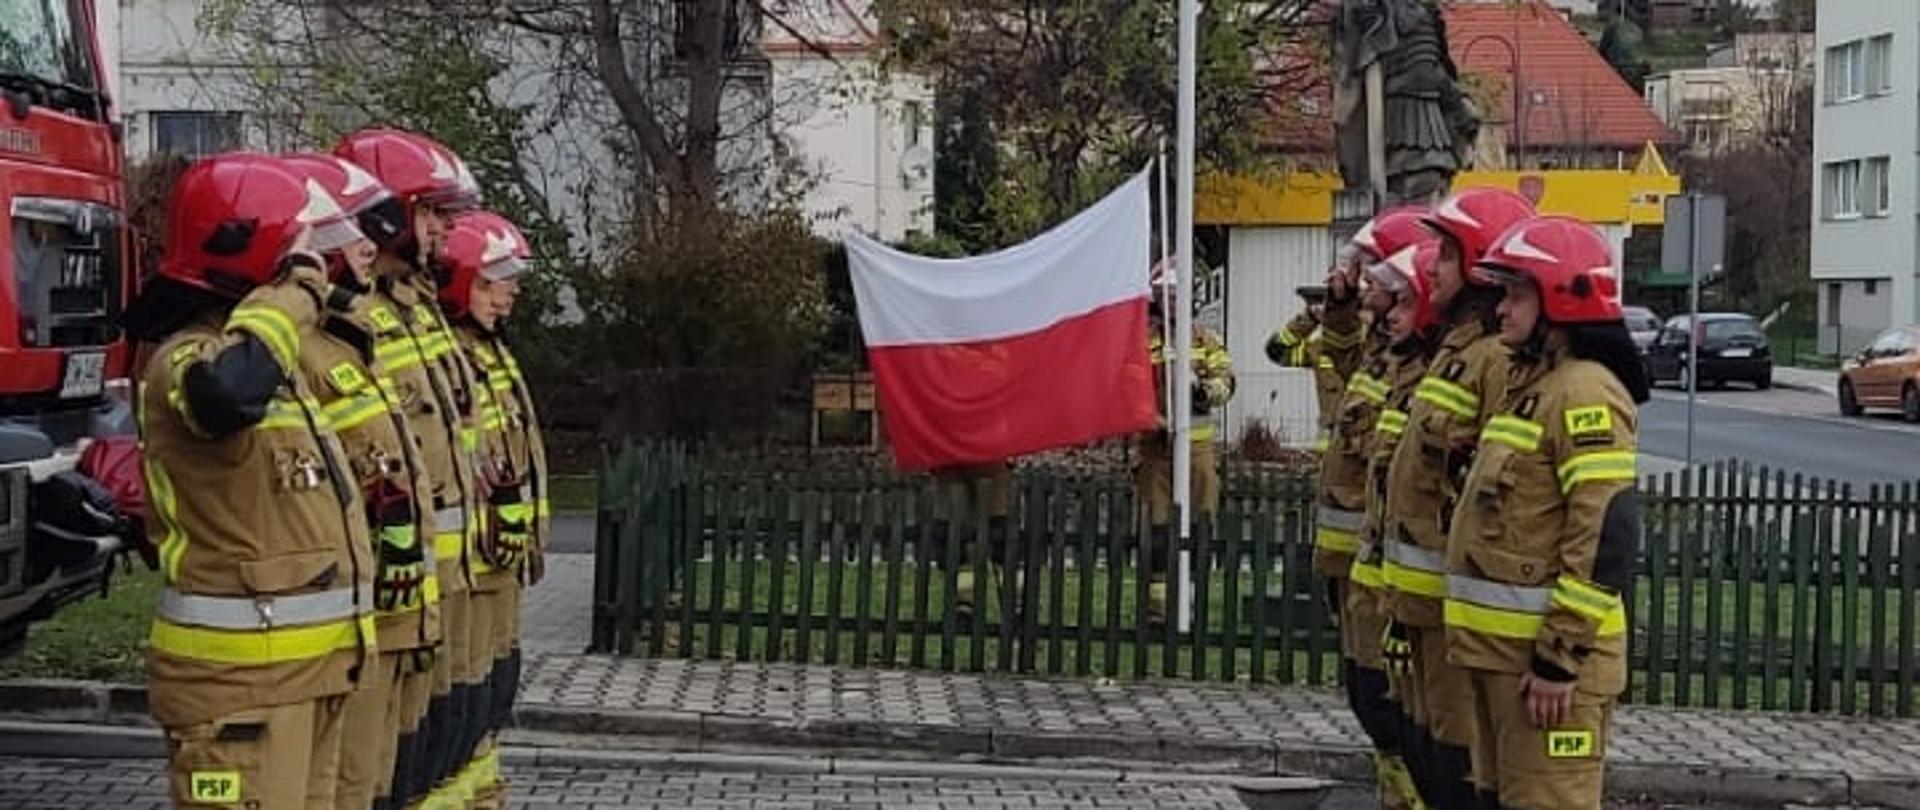 W dniu 11 listopada przed budynkiem Komendy Powiatowej PSP w Lwówku Śląskim o godzinie 8:00 podczas zmiany służbowej odbyło się uroczyste podniesienie Flagi Państwowej w asyście zmian służbowych z okazji 104 rocznicy Odzyskania Niepodległości przez Polskę.
